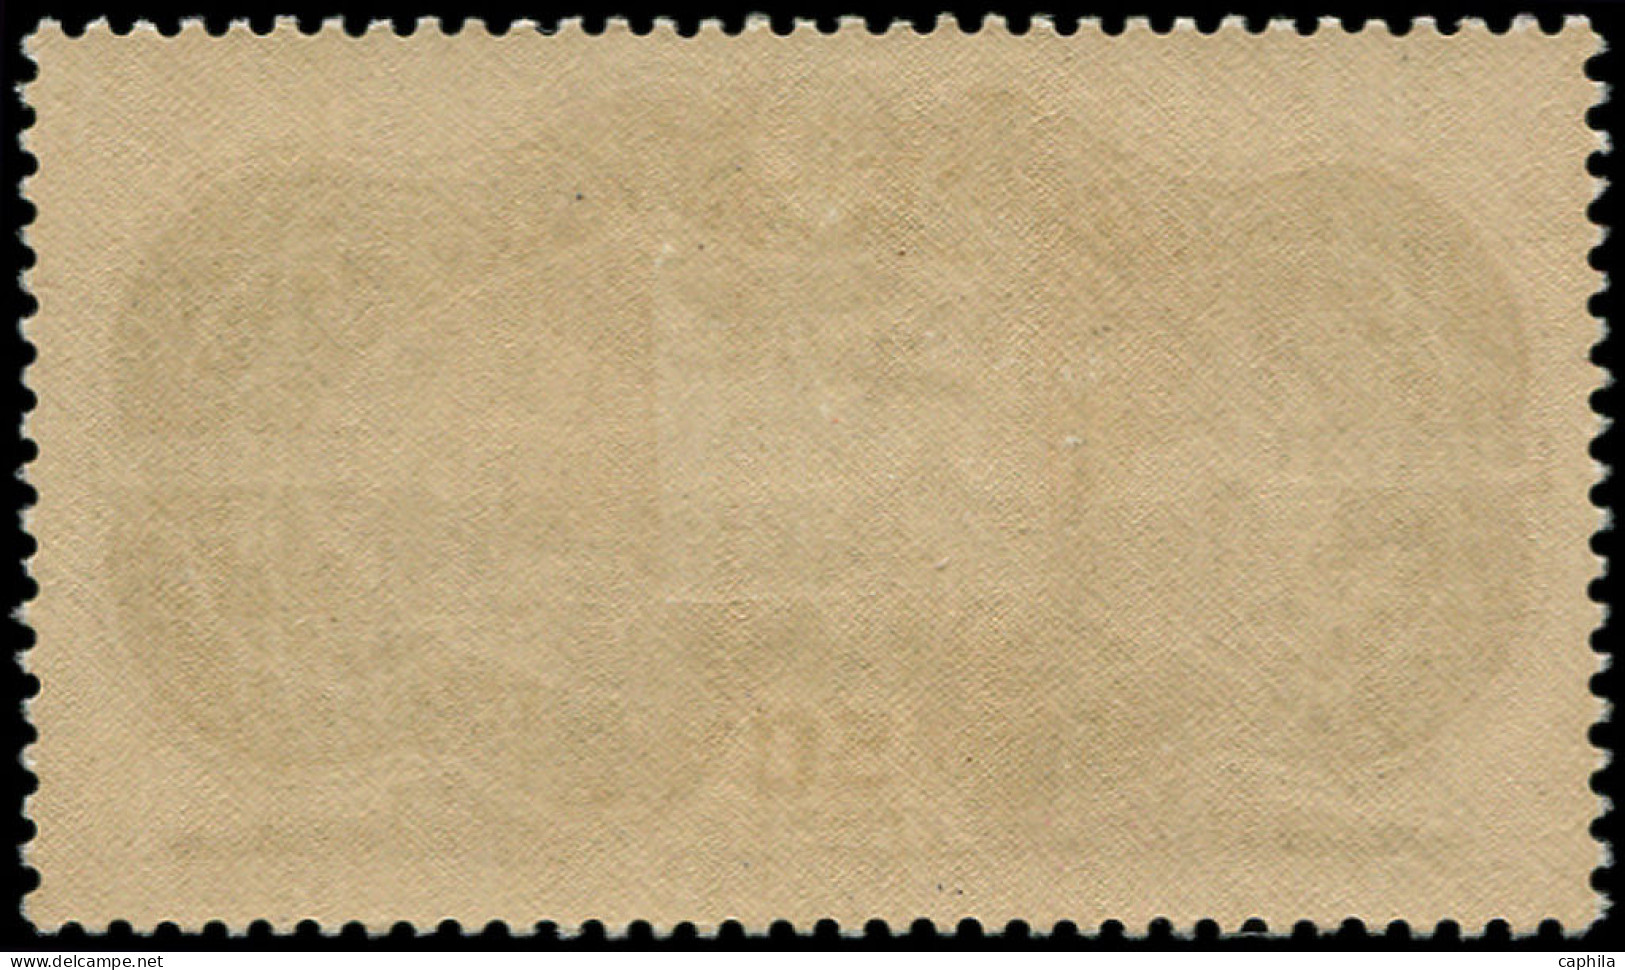 * FRANCE - Poste Aérienne - 15, 50f. Burelé - 1927-1959 Mint/hinged